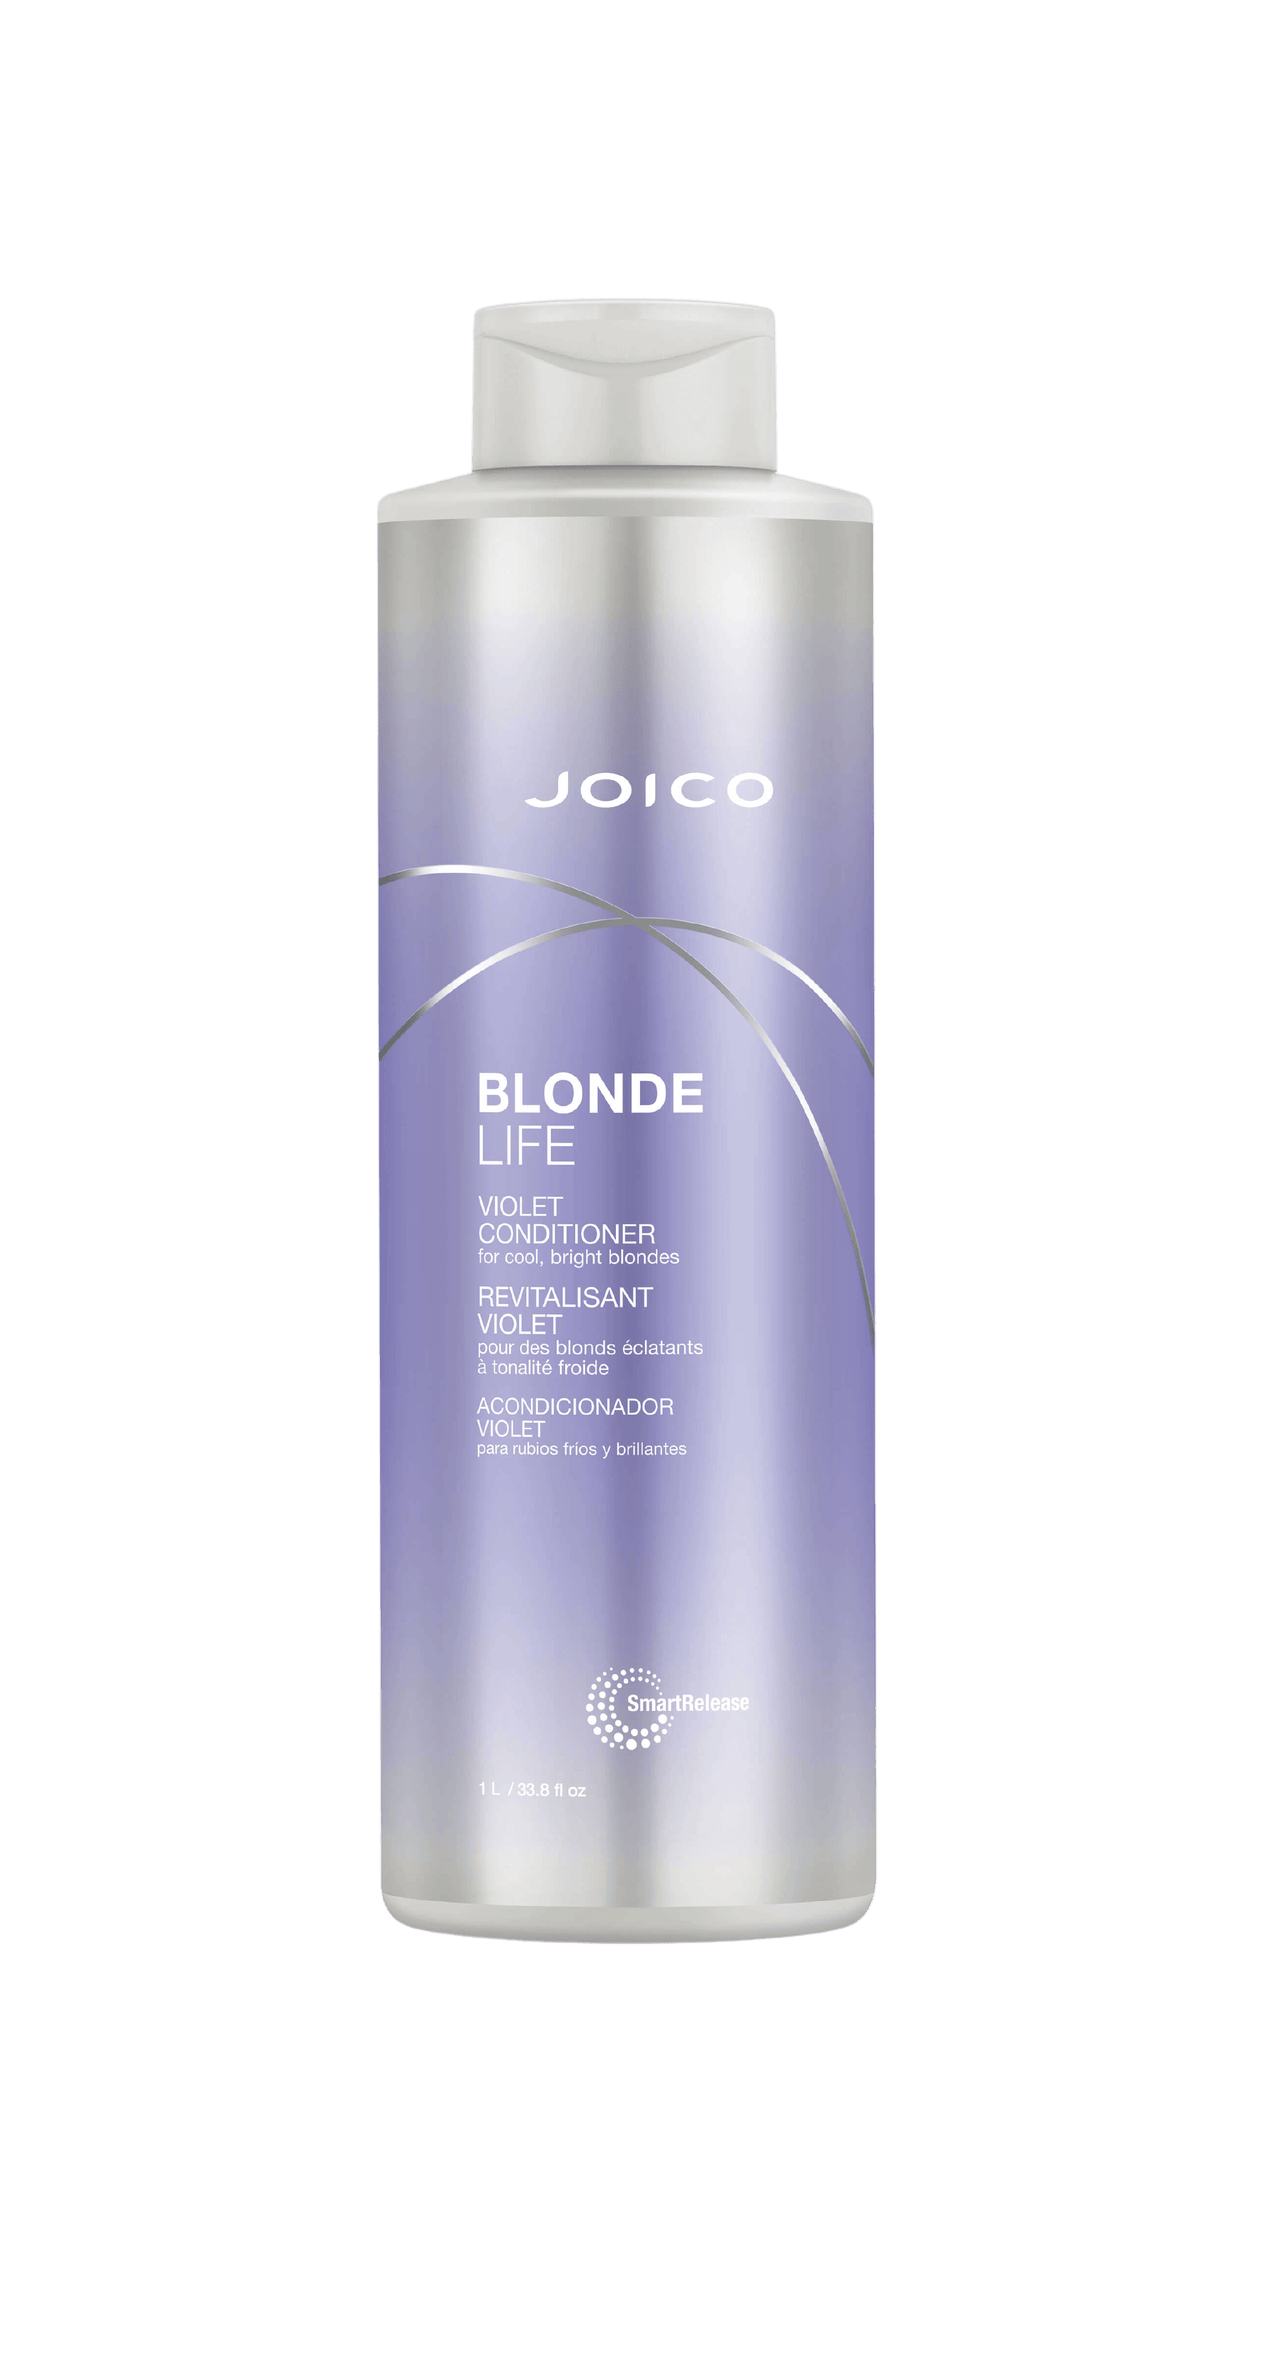 Joico Blonde Life Violet Conditioner 33.8oz Bottle